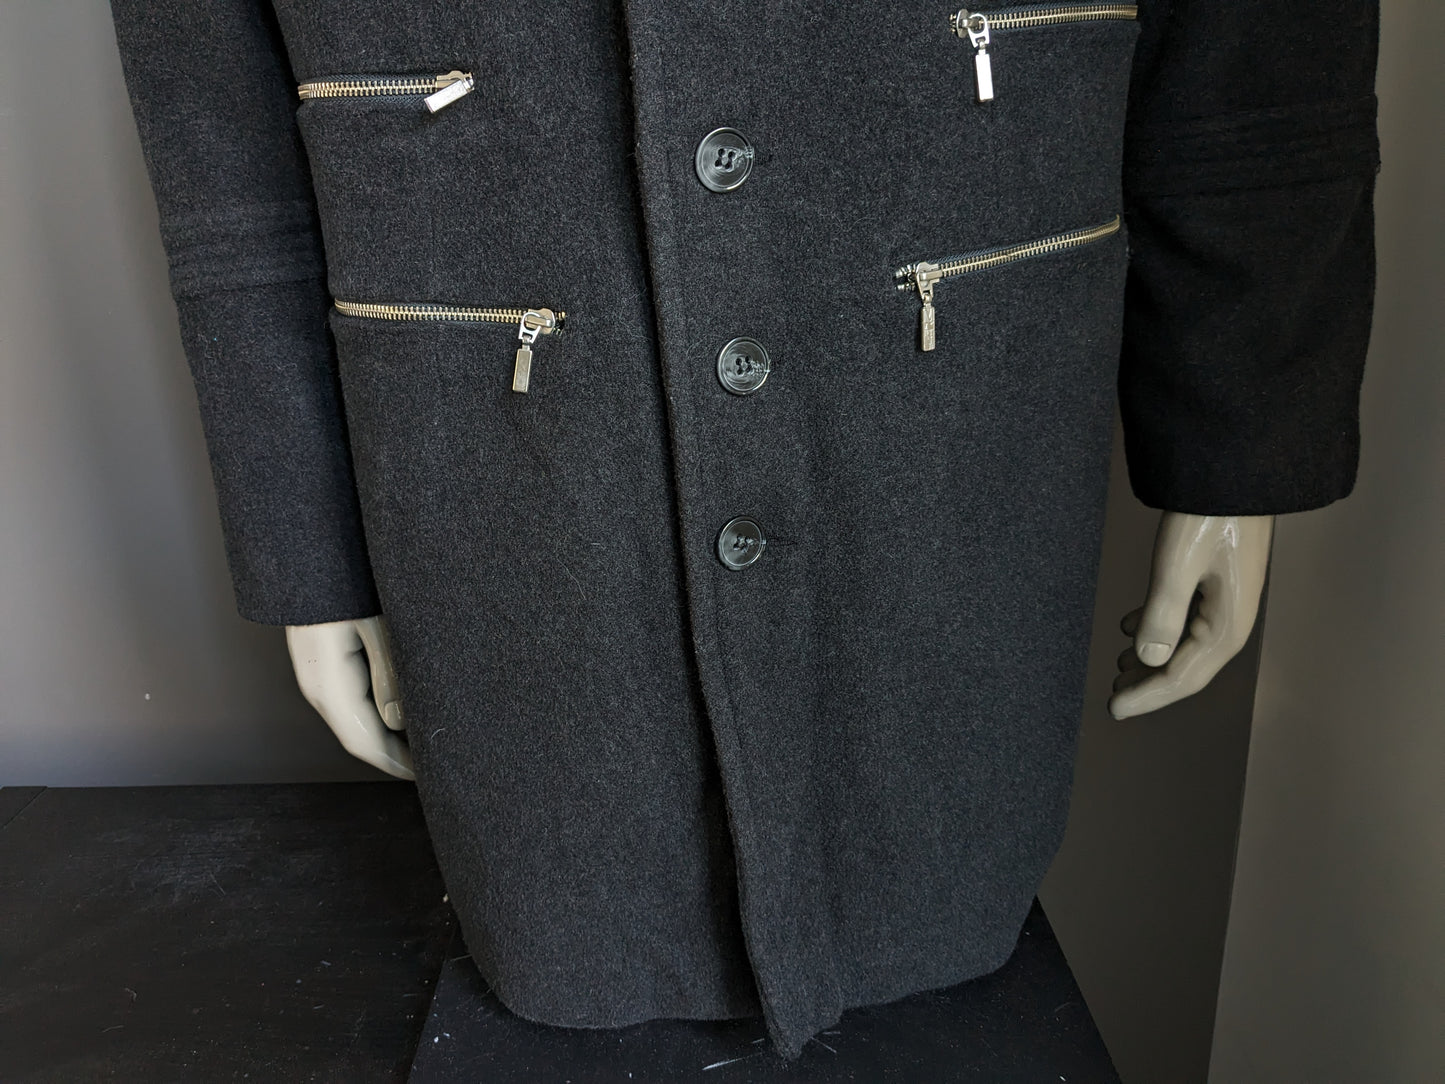 Separare la giacca da mezza lunga lana Martin con bottoni e applicazioni con cerniera. Grigio scuro. Dimensione 52 / L.